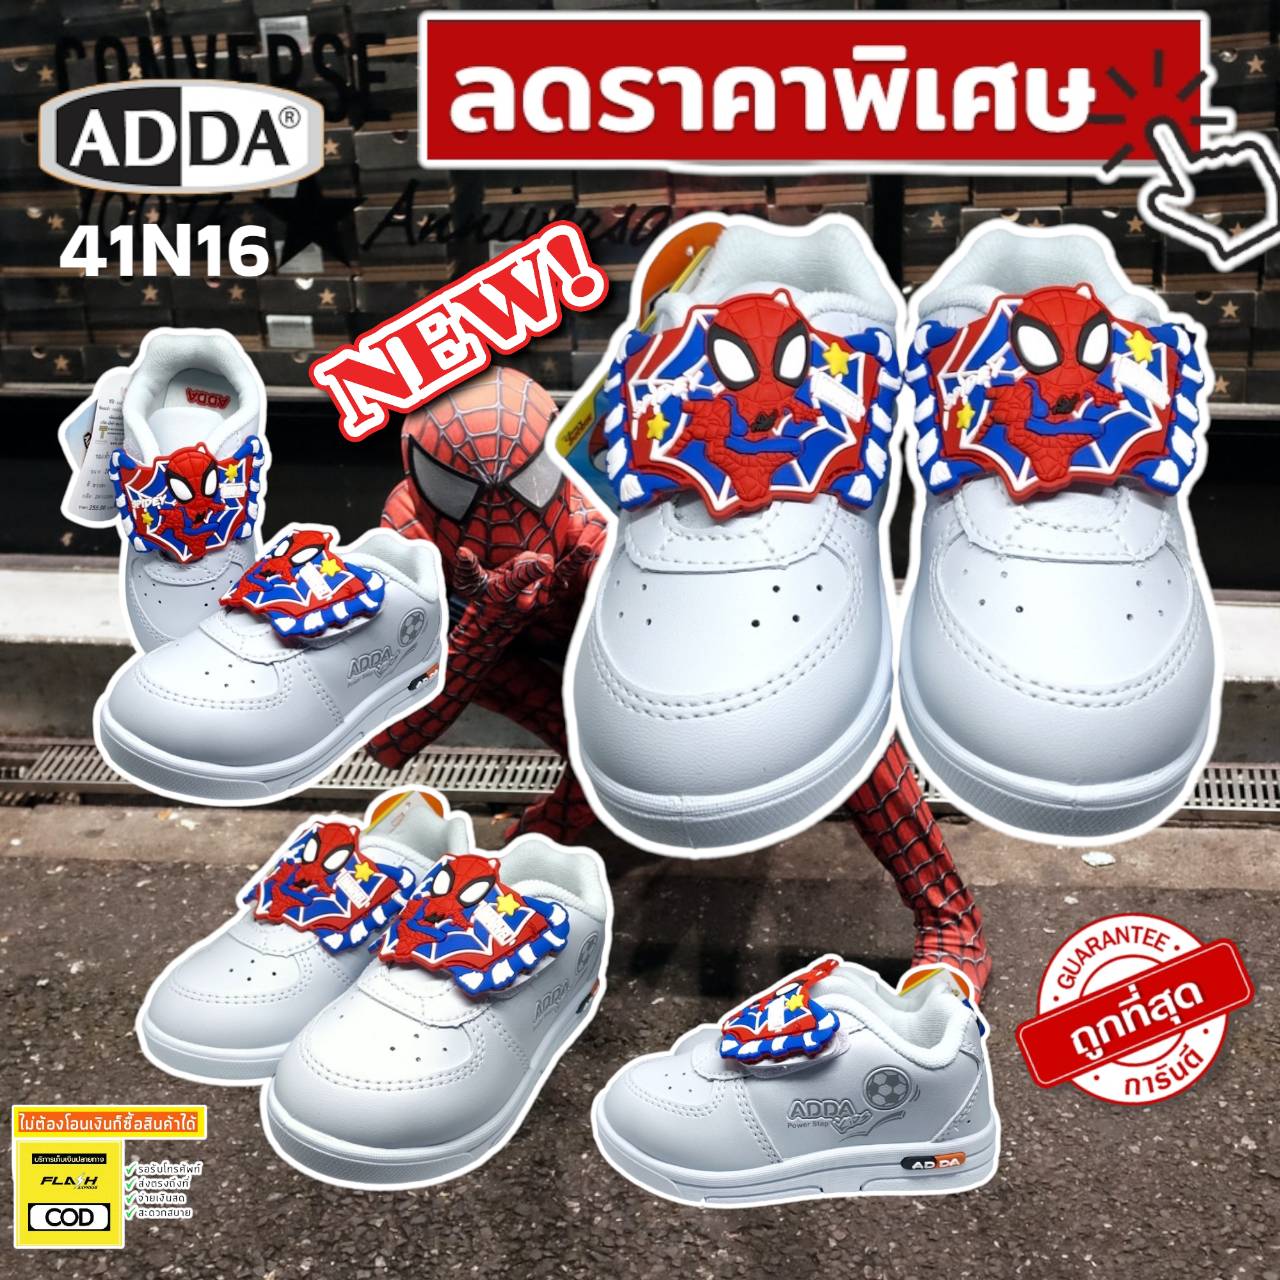 ลองดูภาพสินค้า ADDA รองเท้านักเรียนชายอนุบาล รองเท้านักเรียนชาย รองเท้าพละชาย สีขาว ADDA Spiderman ของแท้  NEW!!